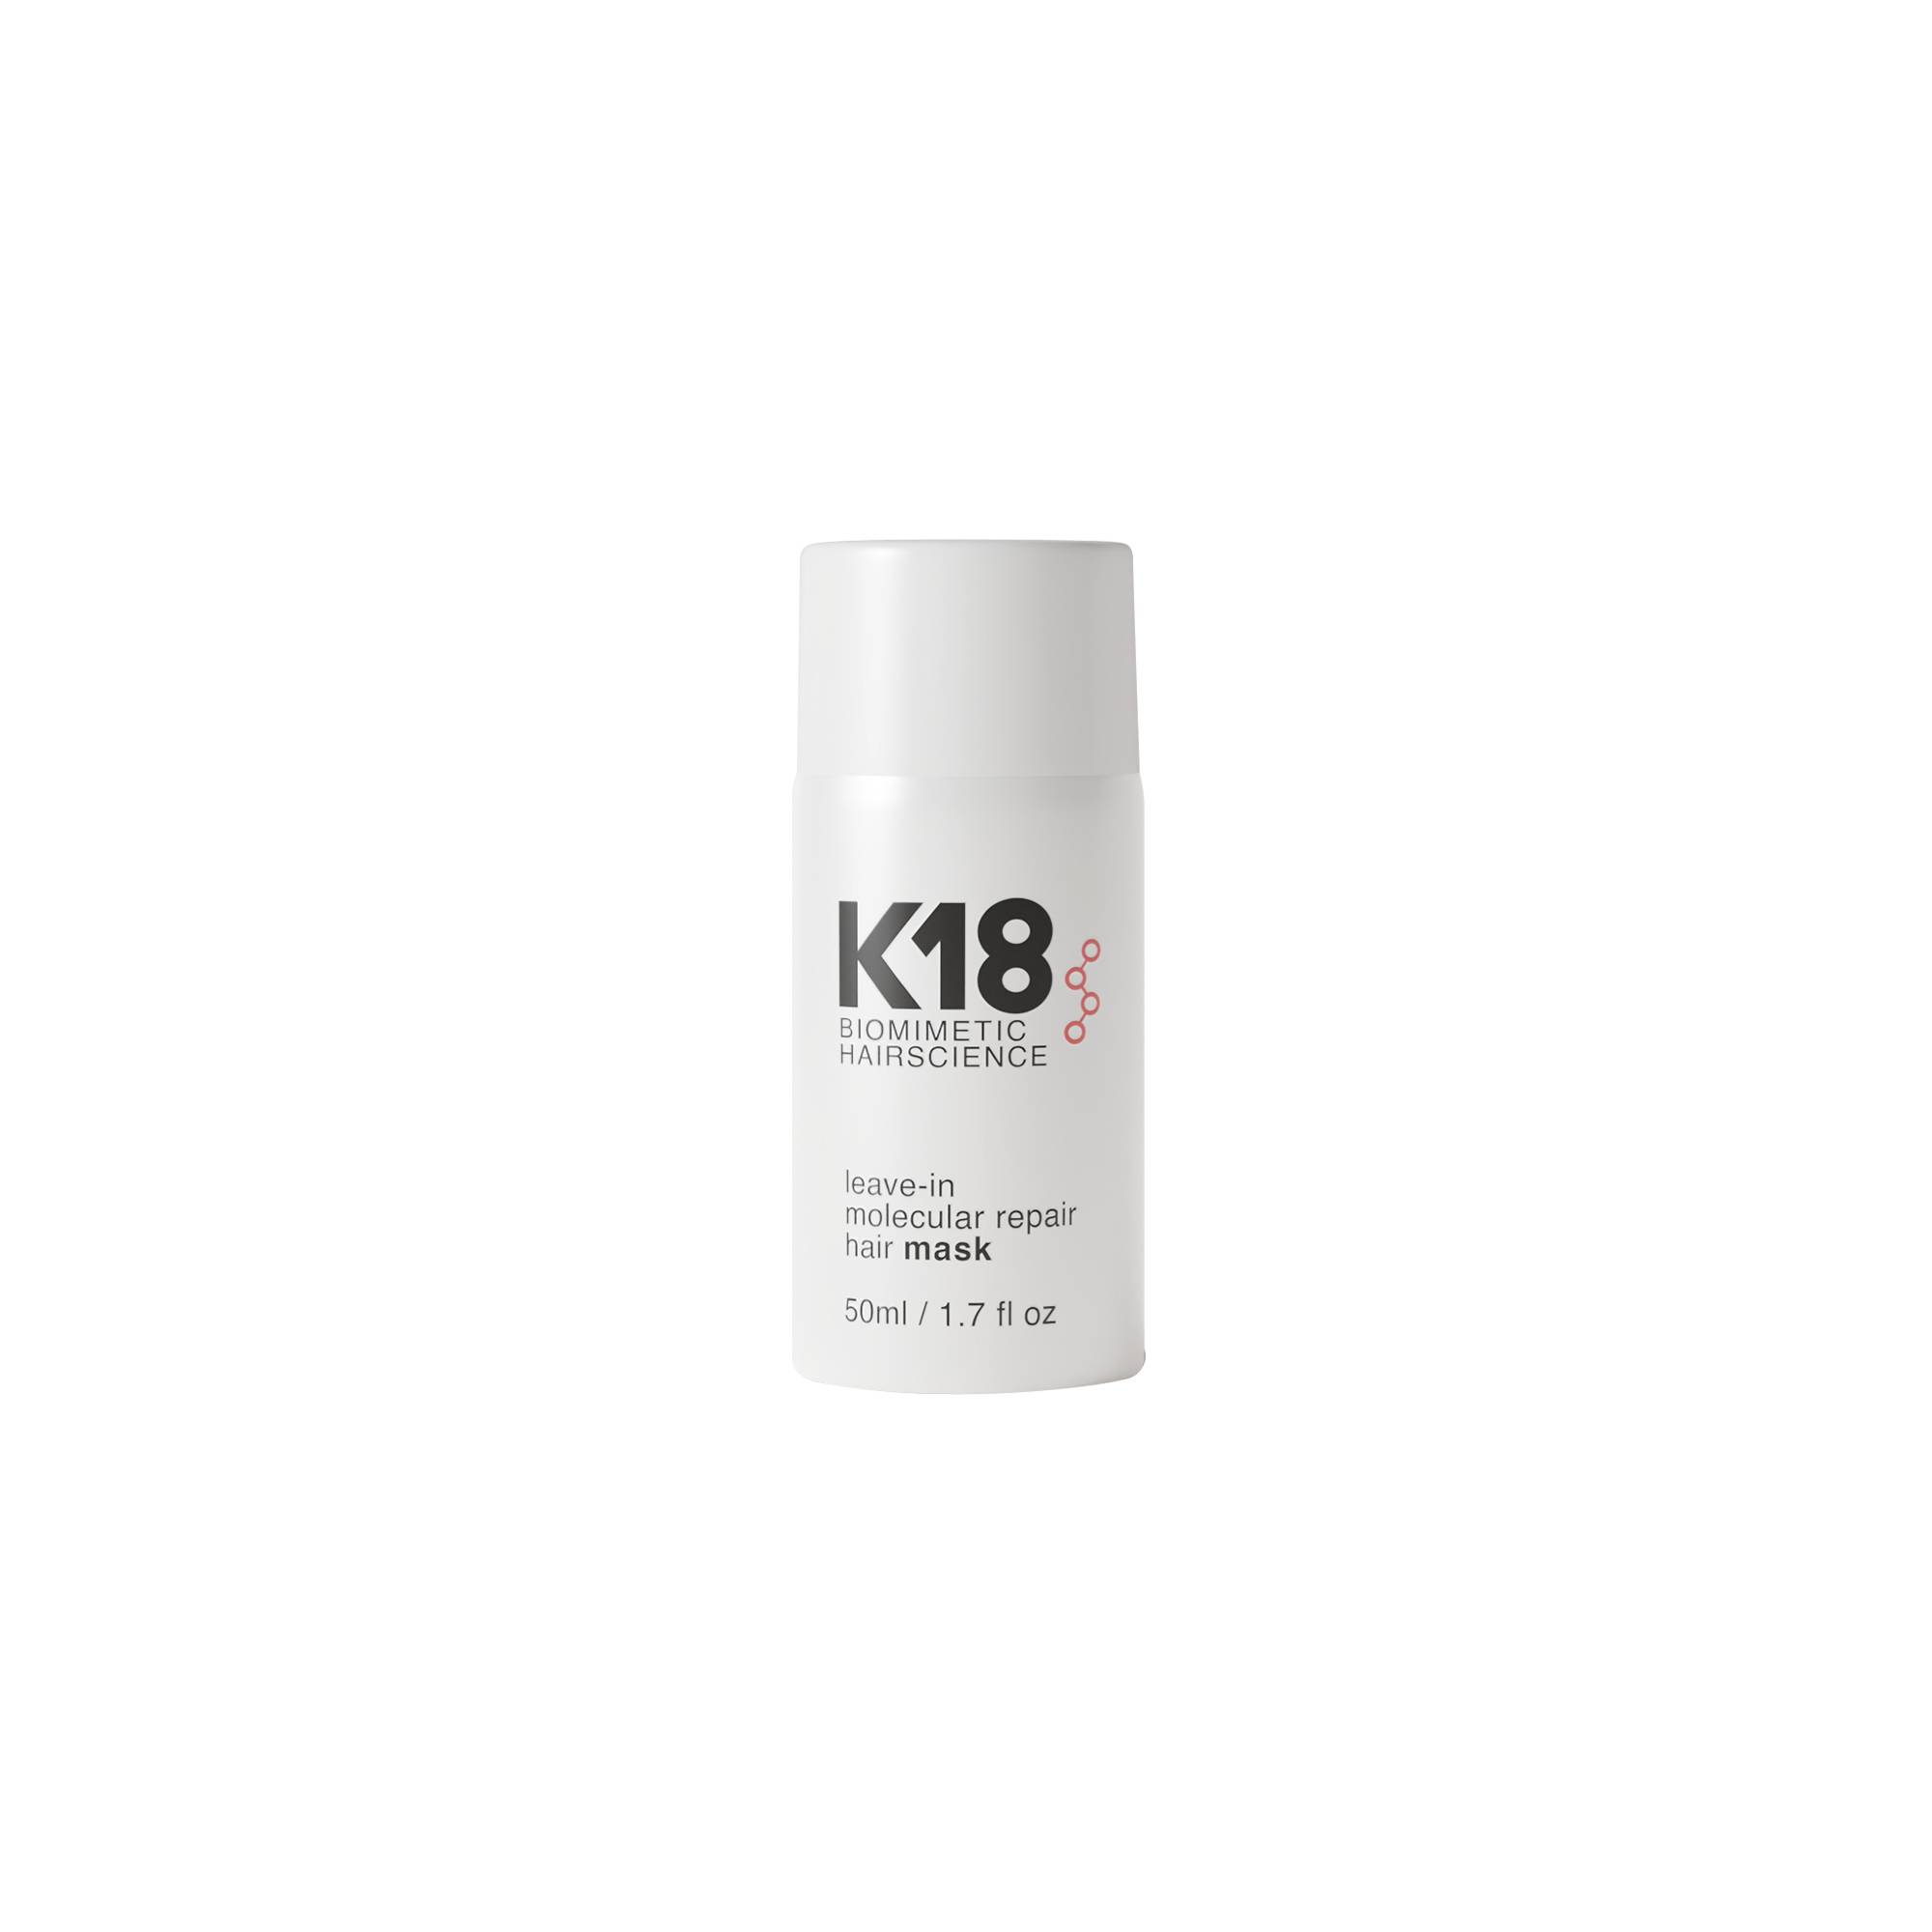 Masque sans rinçage réparation moléculaire Hair Mask de la marque K18 Biomimetic HairScience Contenance 50ml - 1